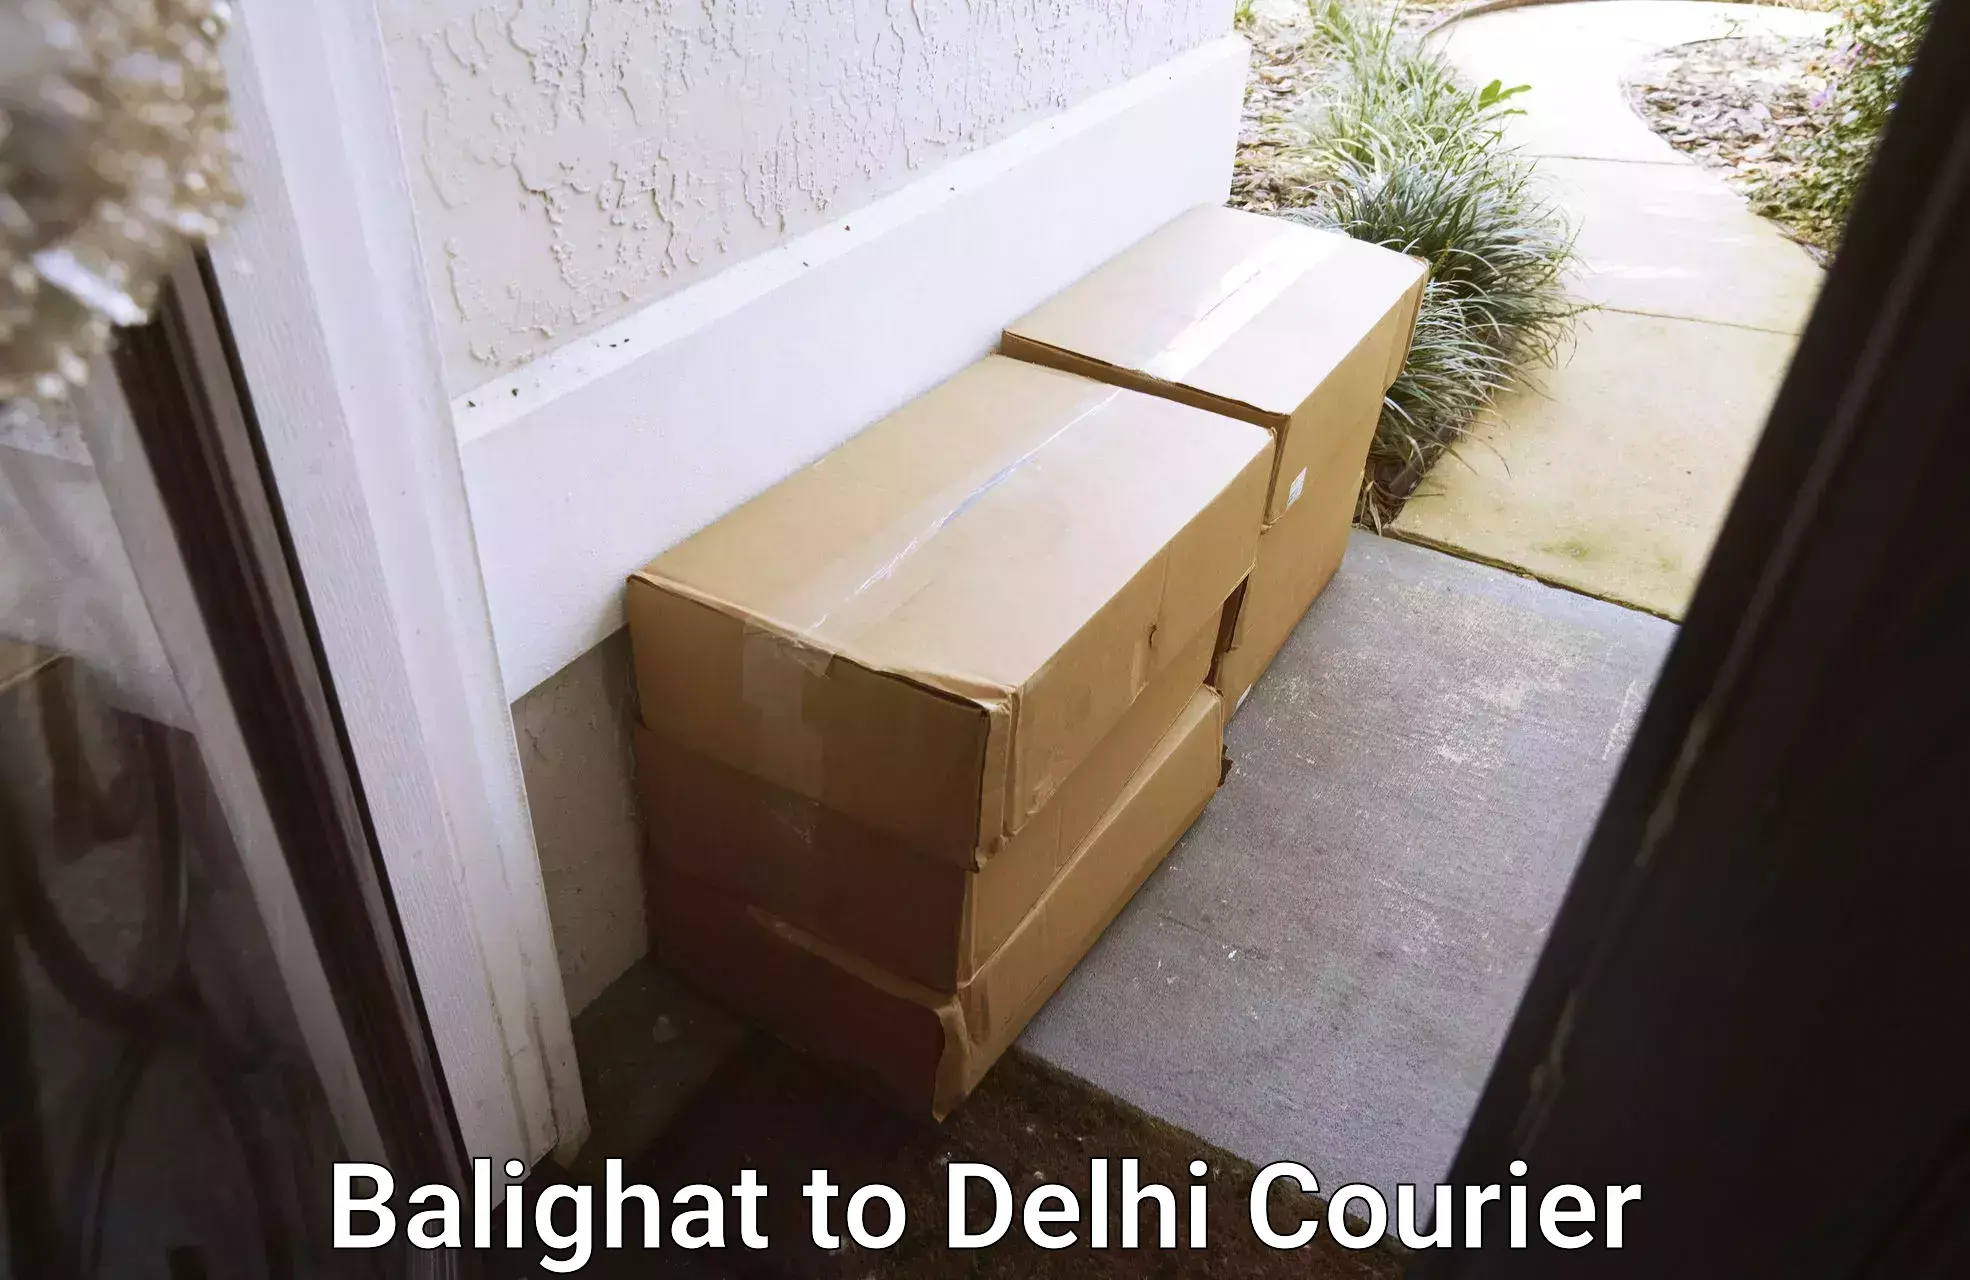 Express logistics providers Balighat to East Delhi